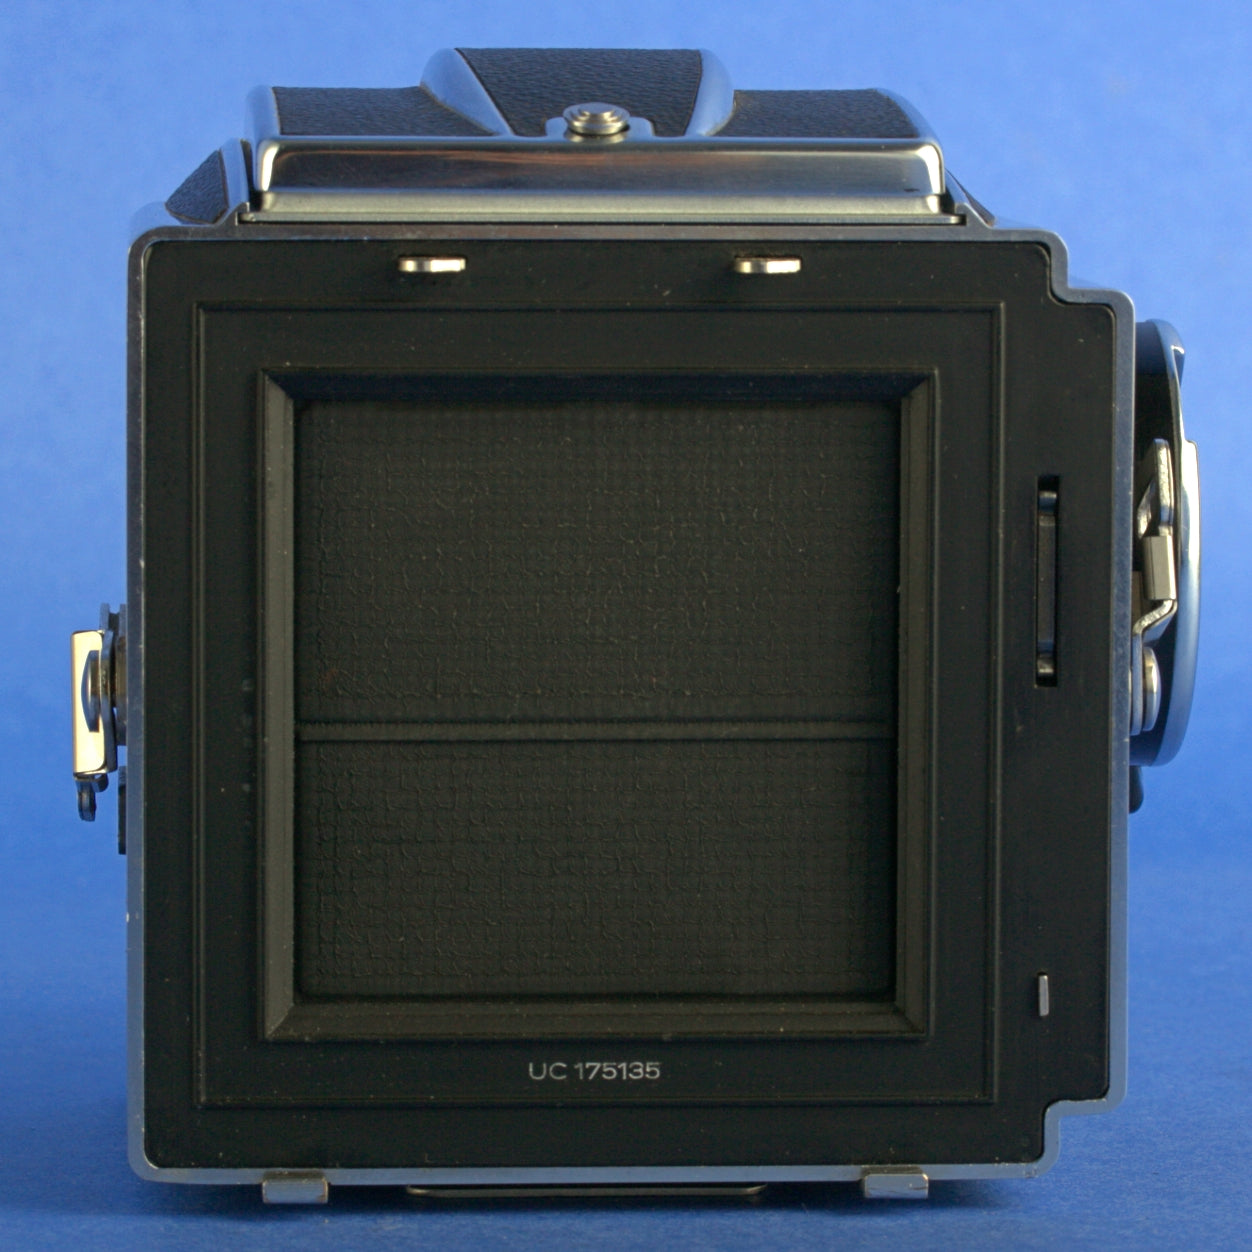 Hasselblad 500 C/M Medium Format Camera Kit